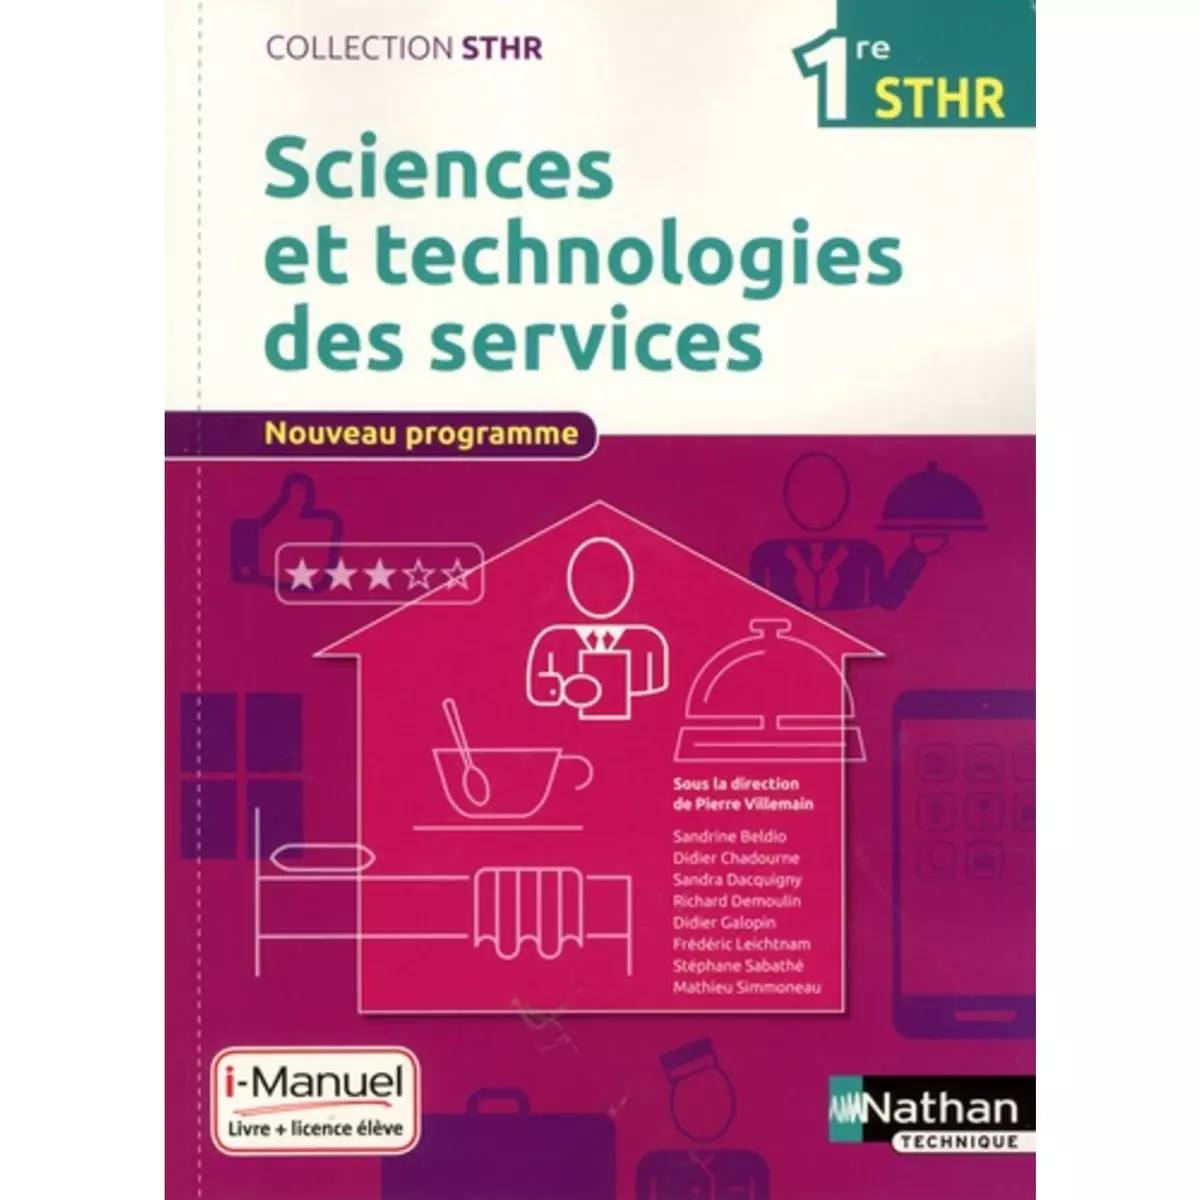  SCIENCES ET TECHNOLOGIES DES SERVICES 1RE STHR. LIVRE + LICENCE ELEVE, EDITION 2016, Villemain Pierre